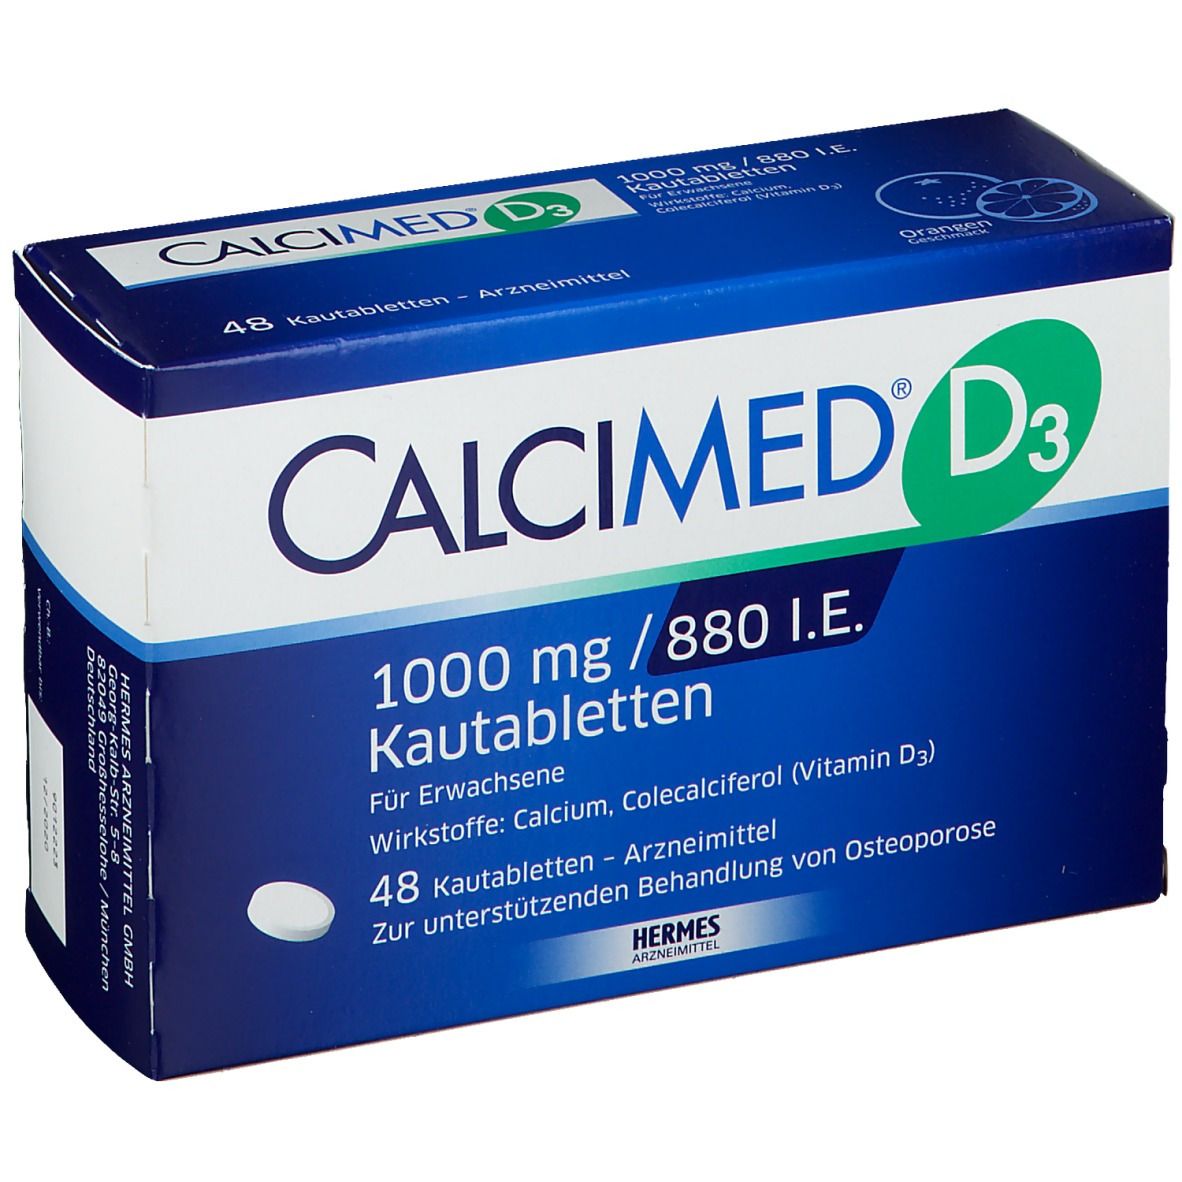 CALCIMED® D3 1000mg / 880 I.E. Kautabletten